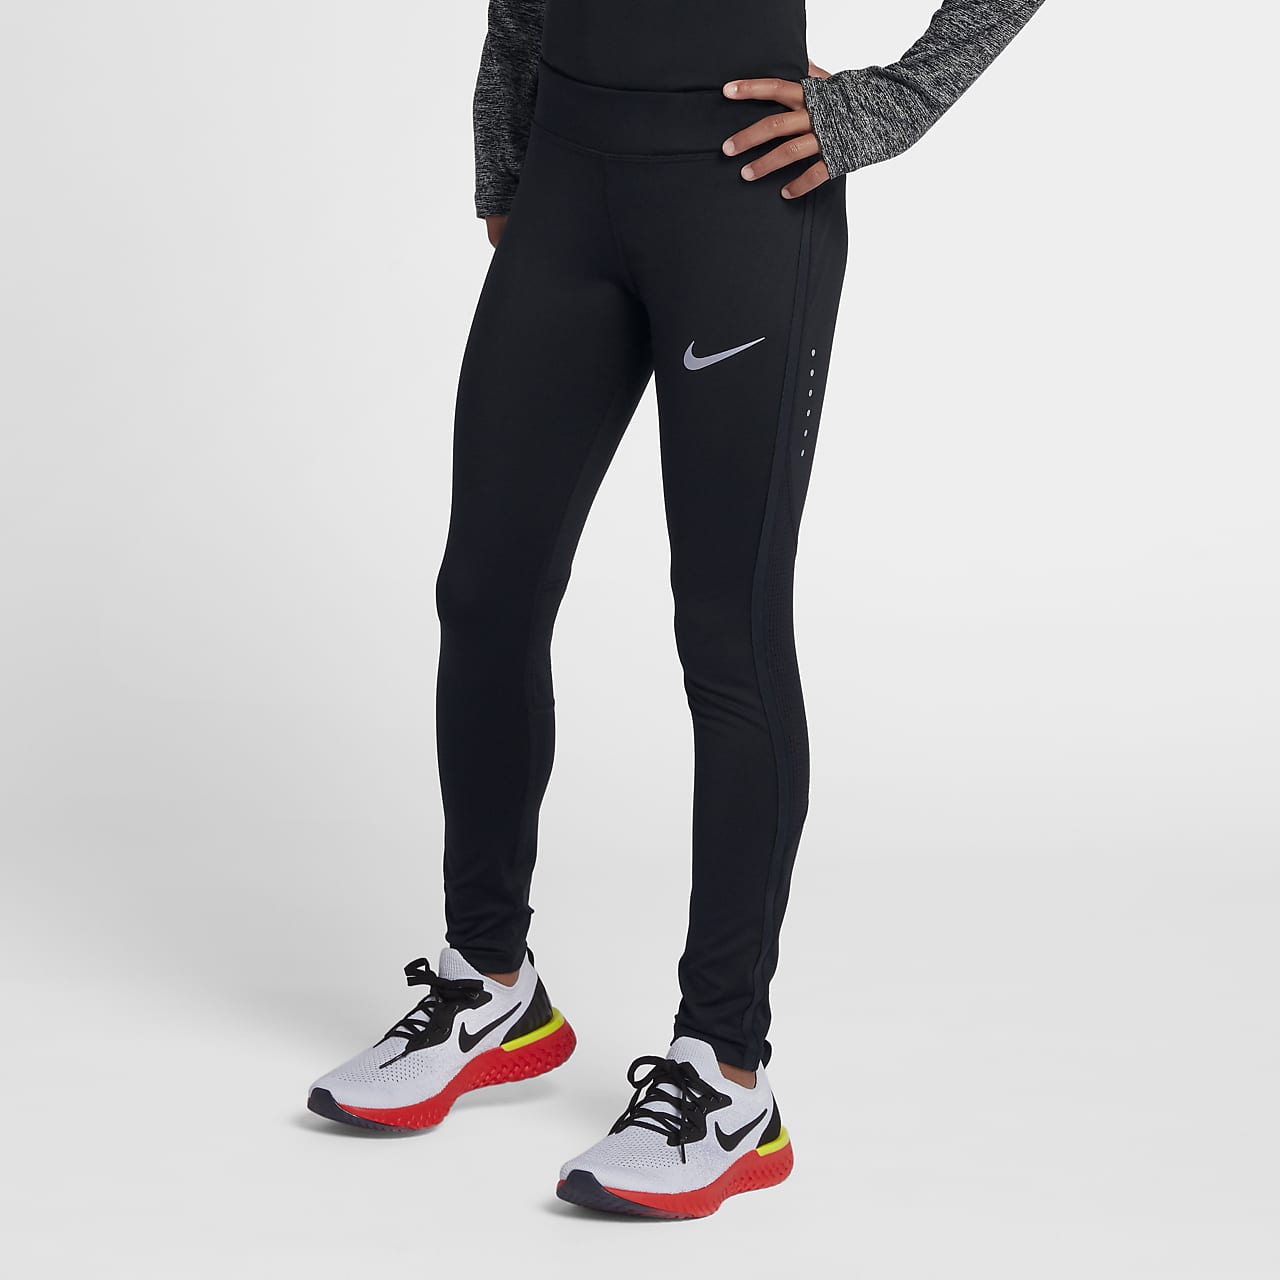 Nike Power løpetights i 3/4 lengde til store barn (jente)